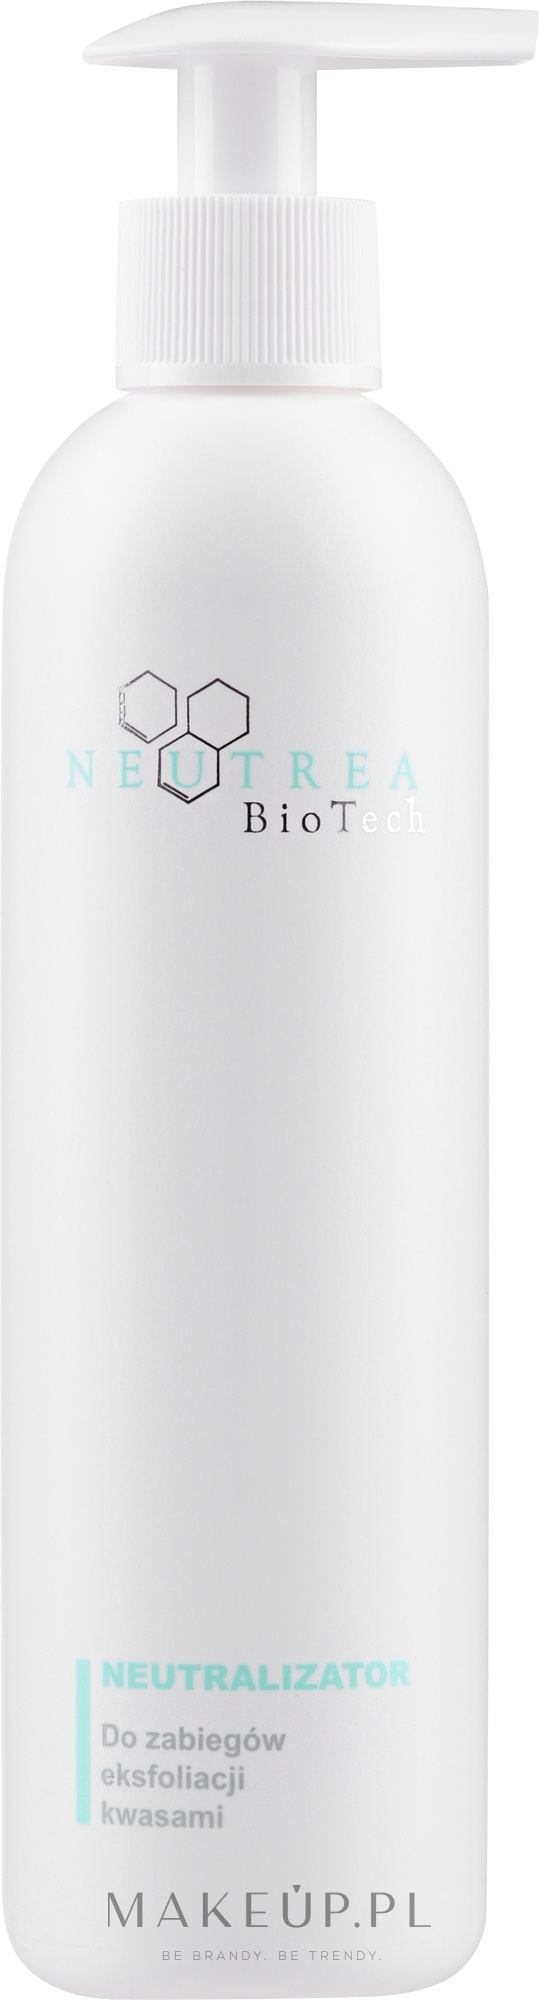 Neutralizator do zabiegów eksfoliacji kwasami - Neutrea BioTech Peel Neutralizer — Zdjęcie 250 ml